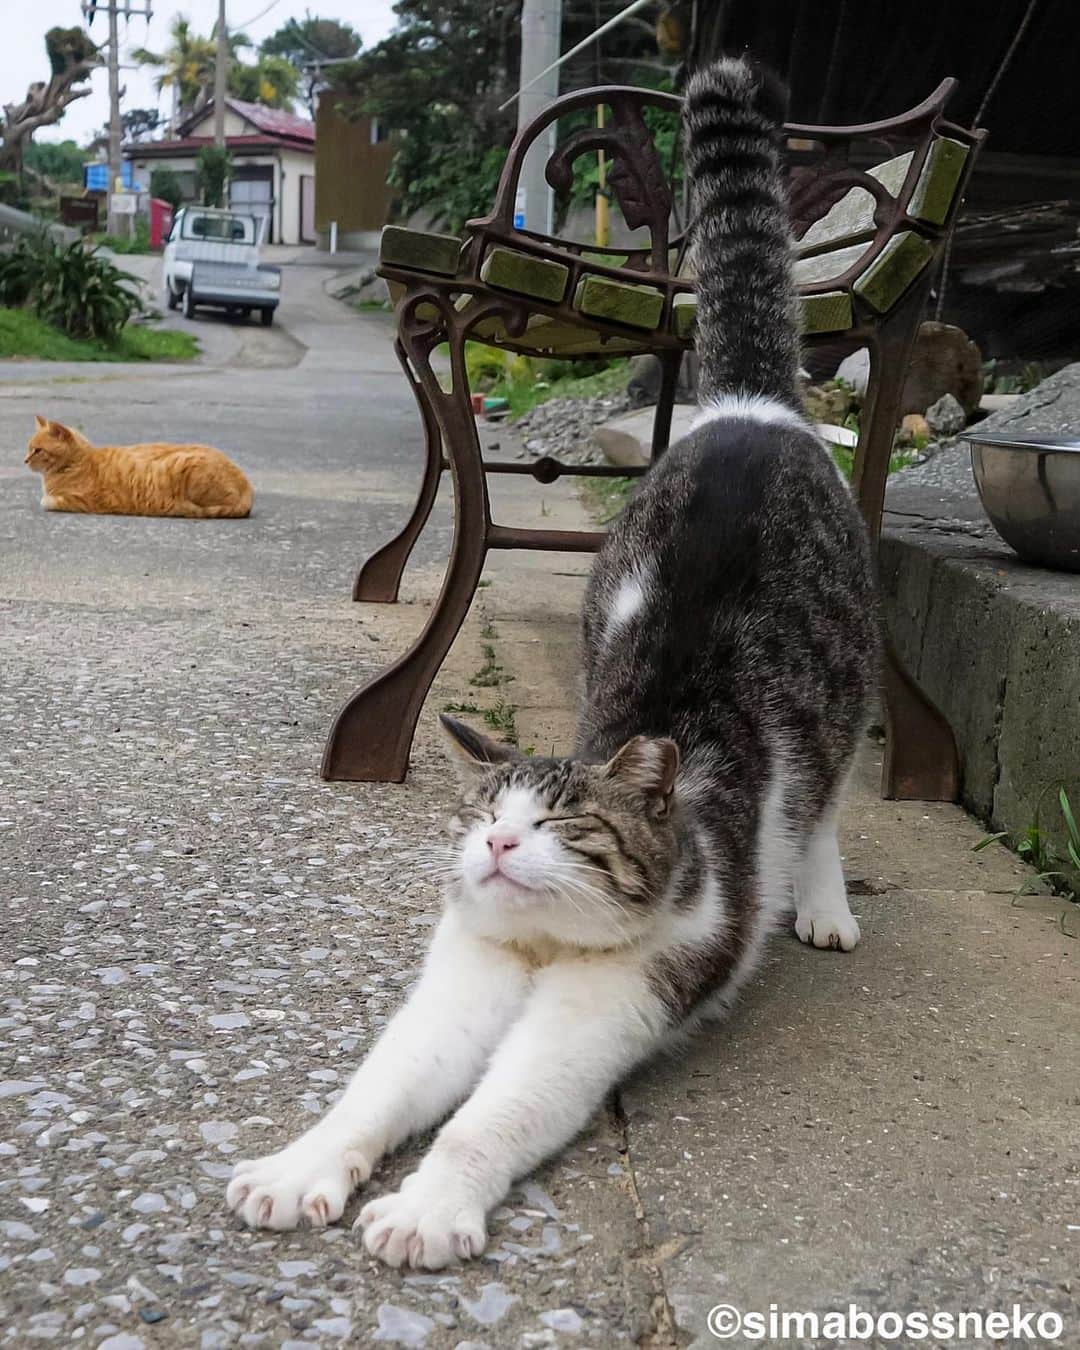 simabossnekoのインスタグラム：「・ おはよ〜〜🐾 Yoga time❣️  2枚目の投稿は動画です。 The 2th post is a video. Swipeしてね←🐾  〜お知らせ〜 minneとメルカリでは『日本の島のごきげんな猫』『キス猫 』『島にゃんこ』のサイン本のセットも販売中です。　  他にも島ねこ日めくりカレンダー2とのセットも❣️ 写真集、カレンダー共に可愛い瞬間がいっぱいです。こちらもぜひ〜🐾  ★minneへは @simabossneko または @p_nyanco22 の プロフィールリンクよりご覧いただけます。  ★メルカリShopsへは、アプリ立ち上げ後「simabossneko's shop」で検索してください。 ・ ・ 【Notice】 At minne shop, we are also selling a set of autographed books of "Nihon no shima no gokigenna neko", "Kiss and Cuddle Cats" and "Island Cats".  ◆Special!  Author ”simabossneko” an  autographed book.  Available now at minne simabossneko's shop Shop URL→ https://minne.com/＠simabossneko  You can jump “minne simabossneko's shop“ directly from the link in @simabossneko or @p_nyanco22 profile. ・ ・ #しまねこ #島猫 #ねこ #にゃんすたぐらむ #猫写真 #cats_of_world #catloversclub #pleasantcats #catstagram #meowed #ig_japan #lumixg9」